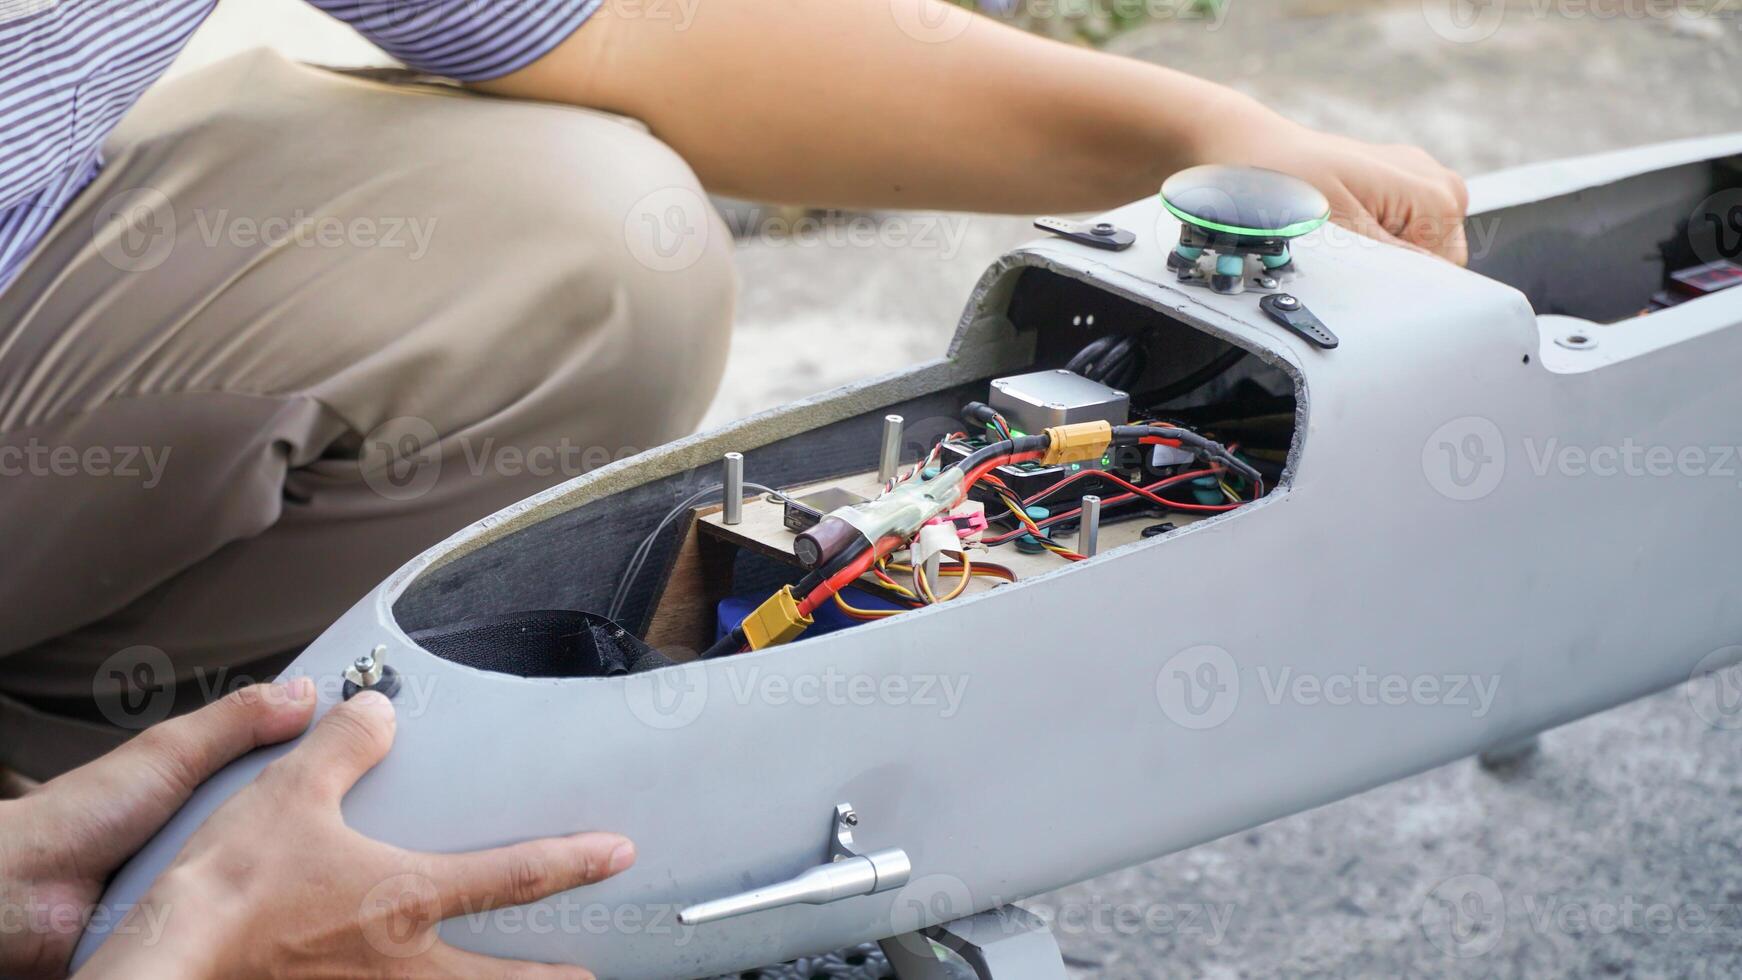 engenheiro concepção e montagem drones. caseiro aeronave fez a partir de resina e carbono fibra foto